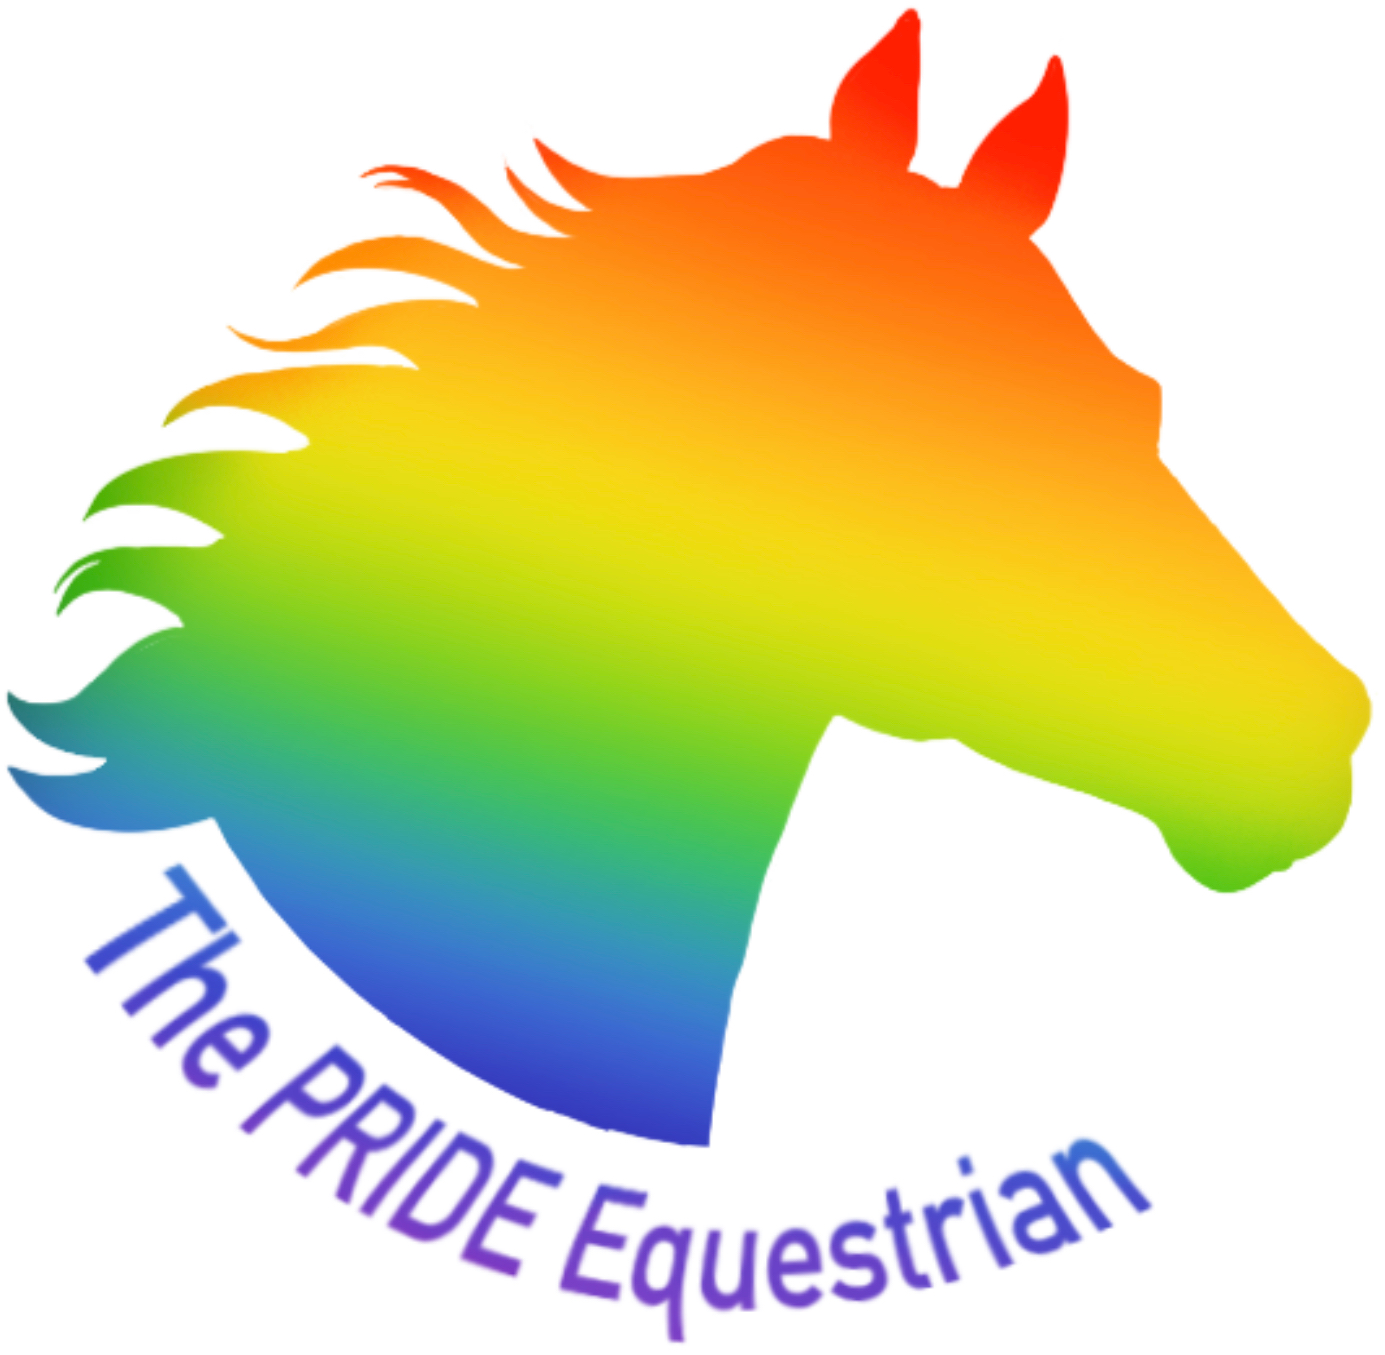 The Pride Equestrian